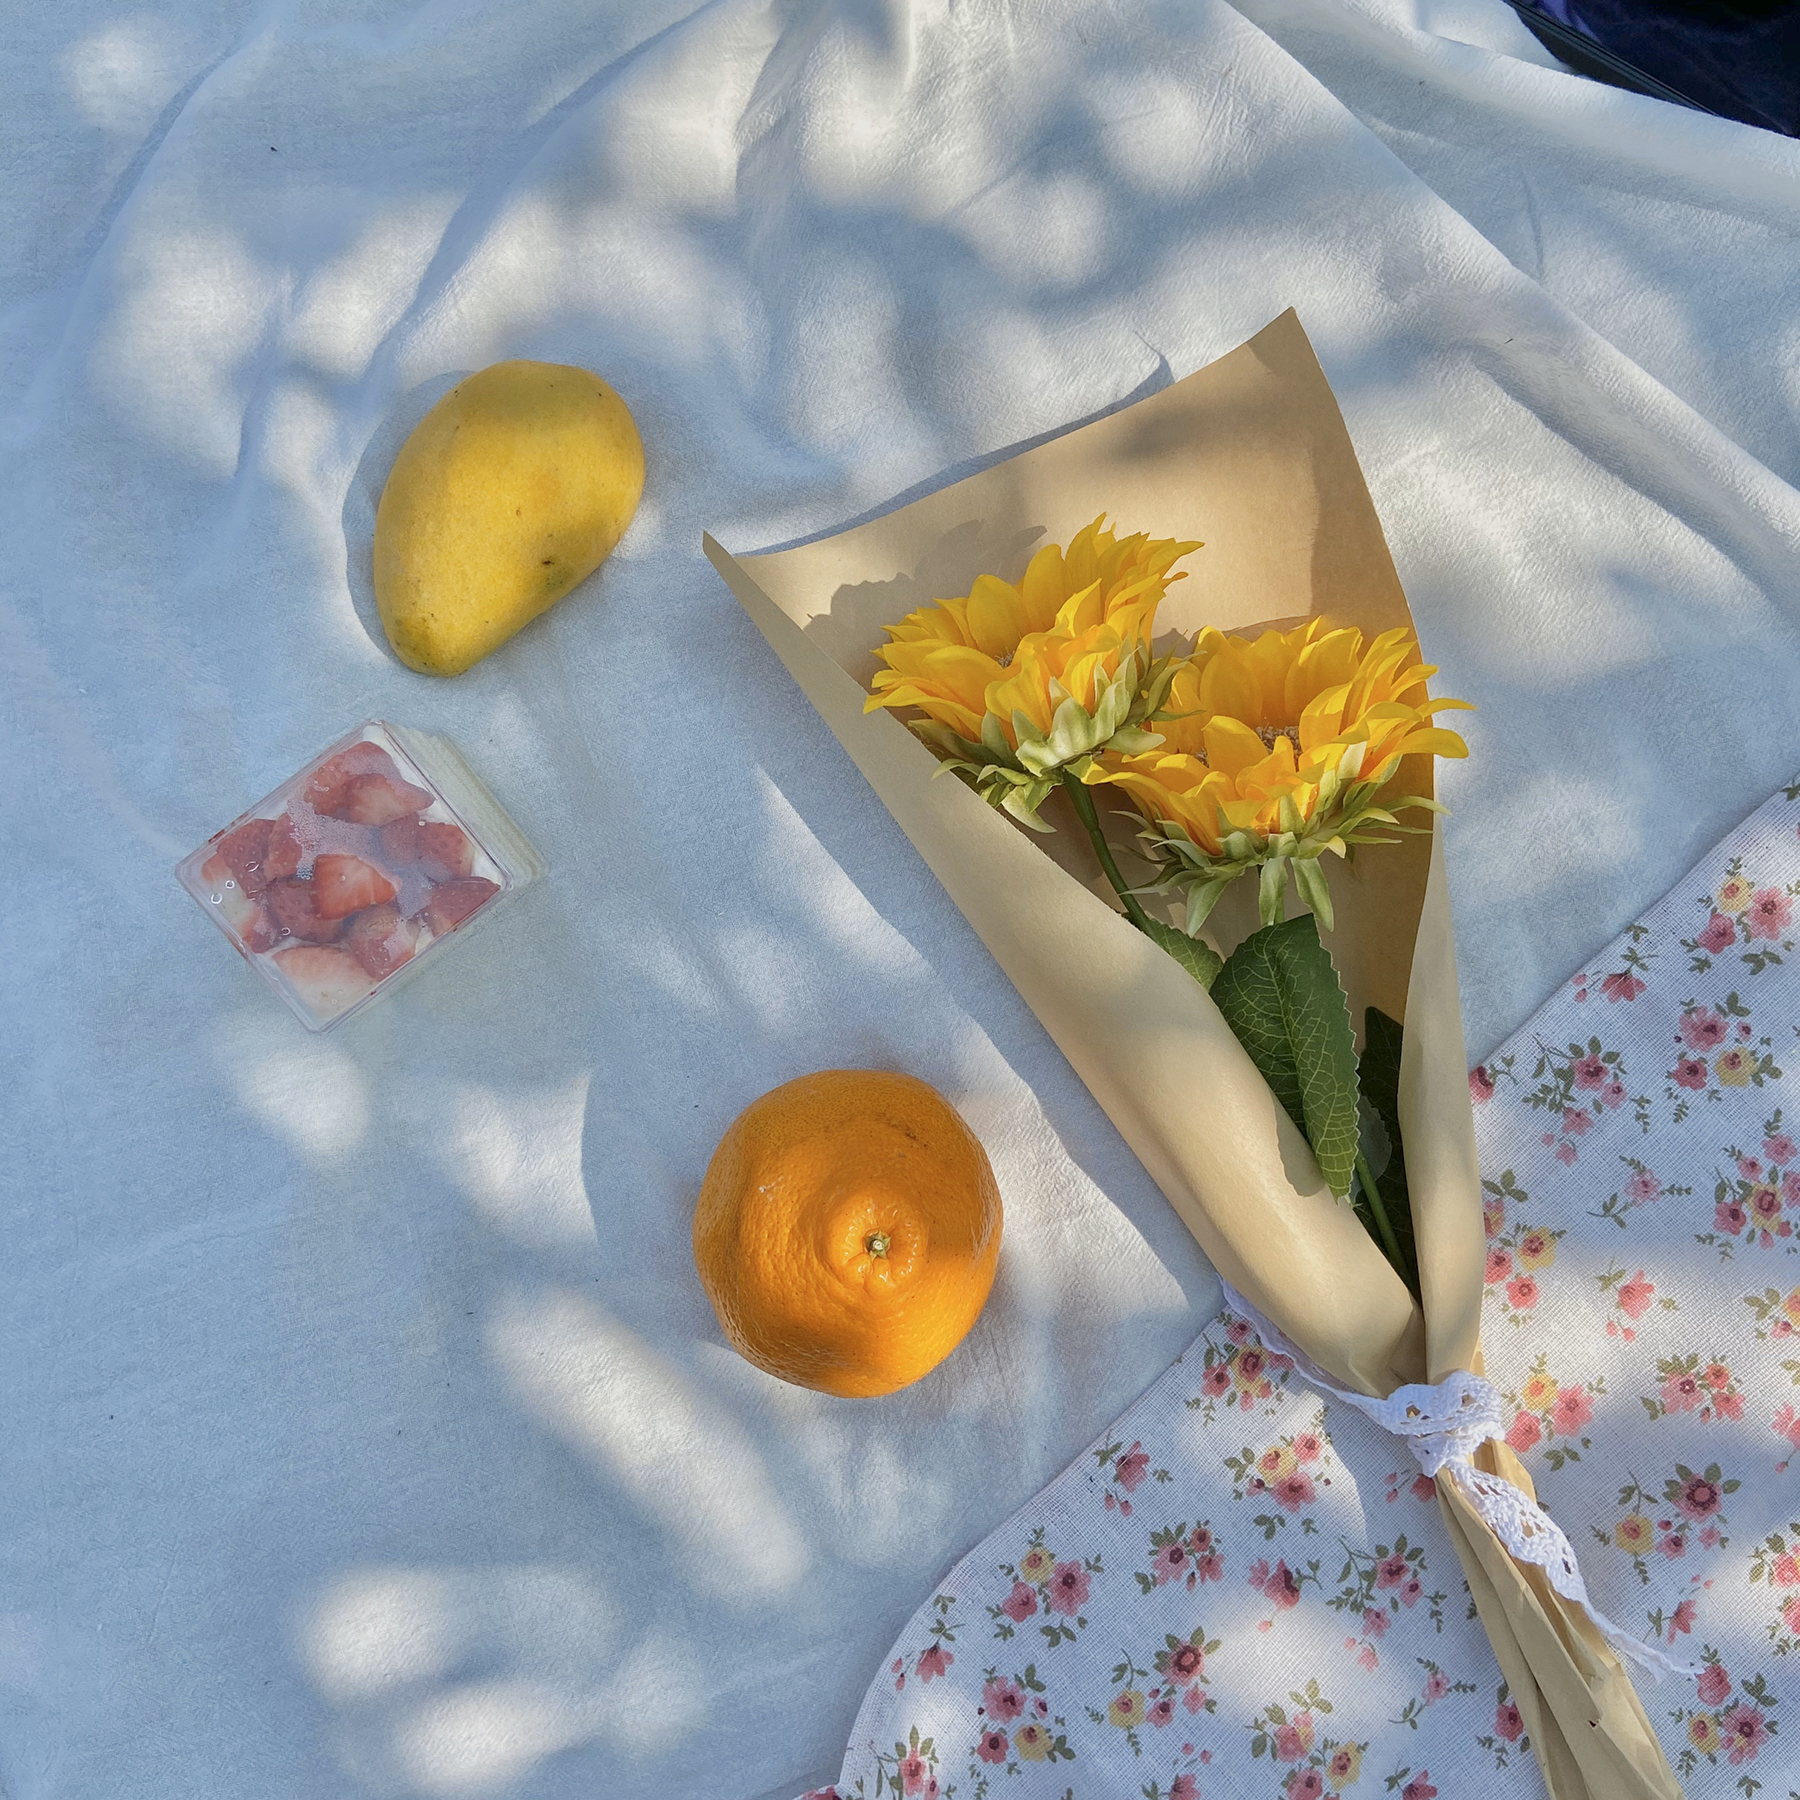 很上镜的太阳花向日葵仿真花野餐拍照道具装饰品旅游拍照花花